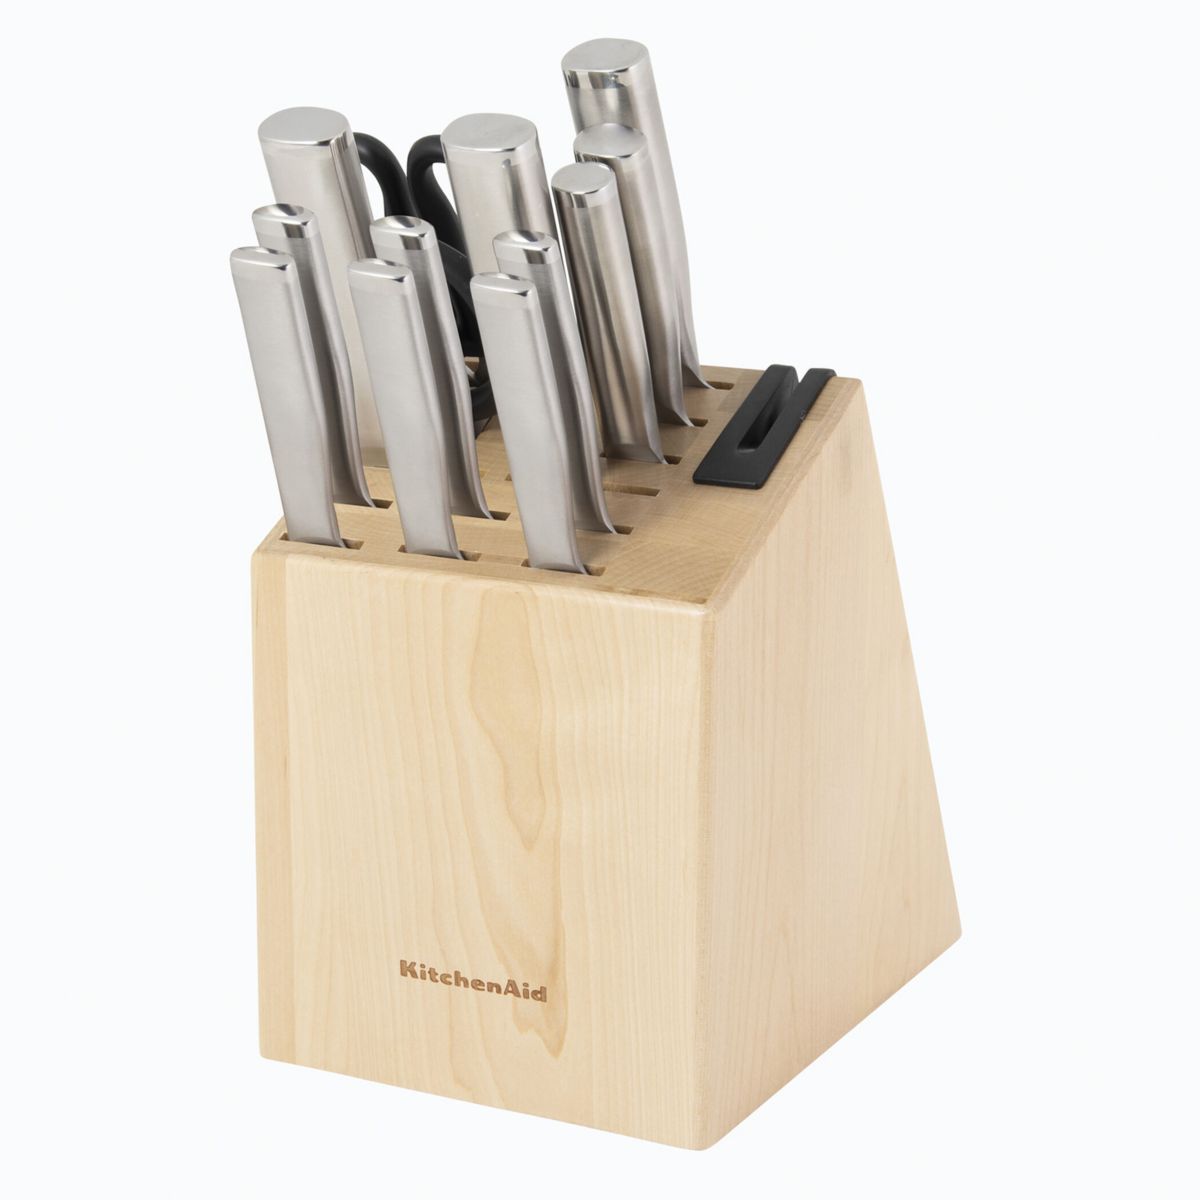 Набор кованых ножей KitchenAid Gourmet со встроенной точилкой для ножей KitchenAid